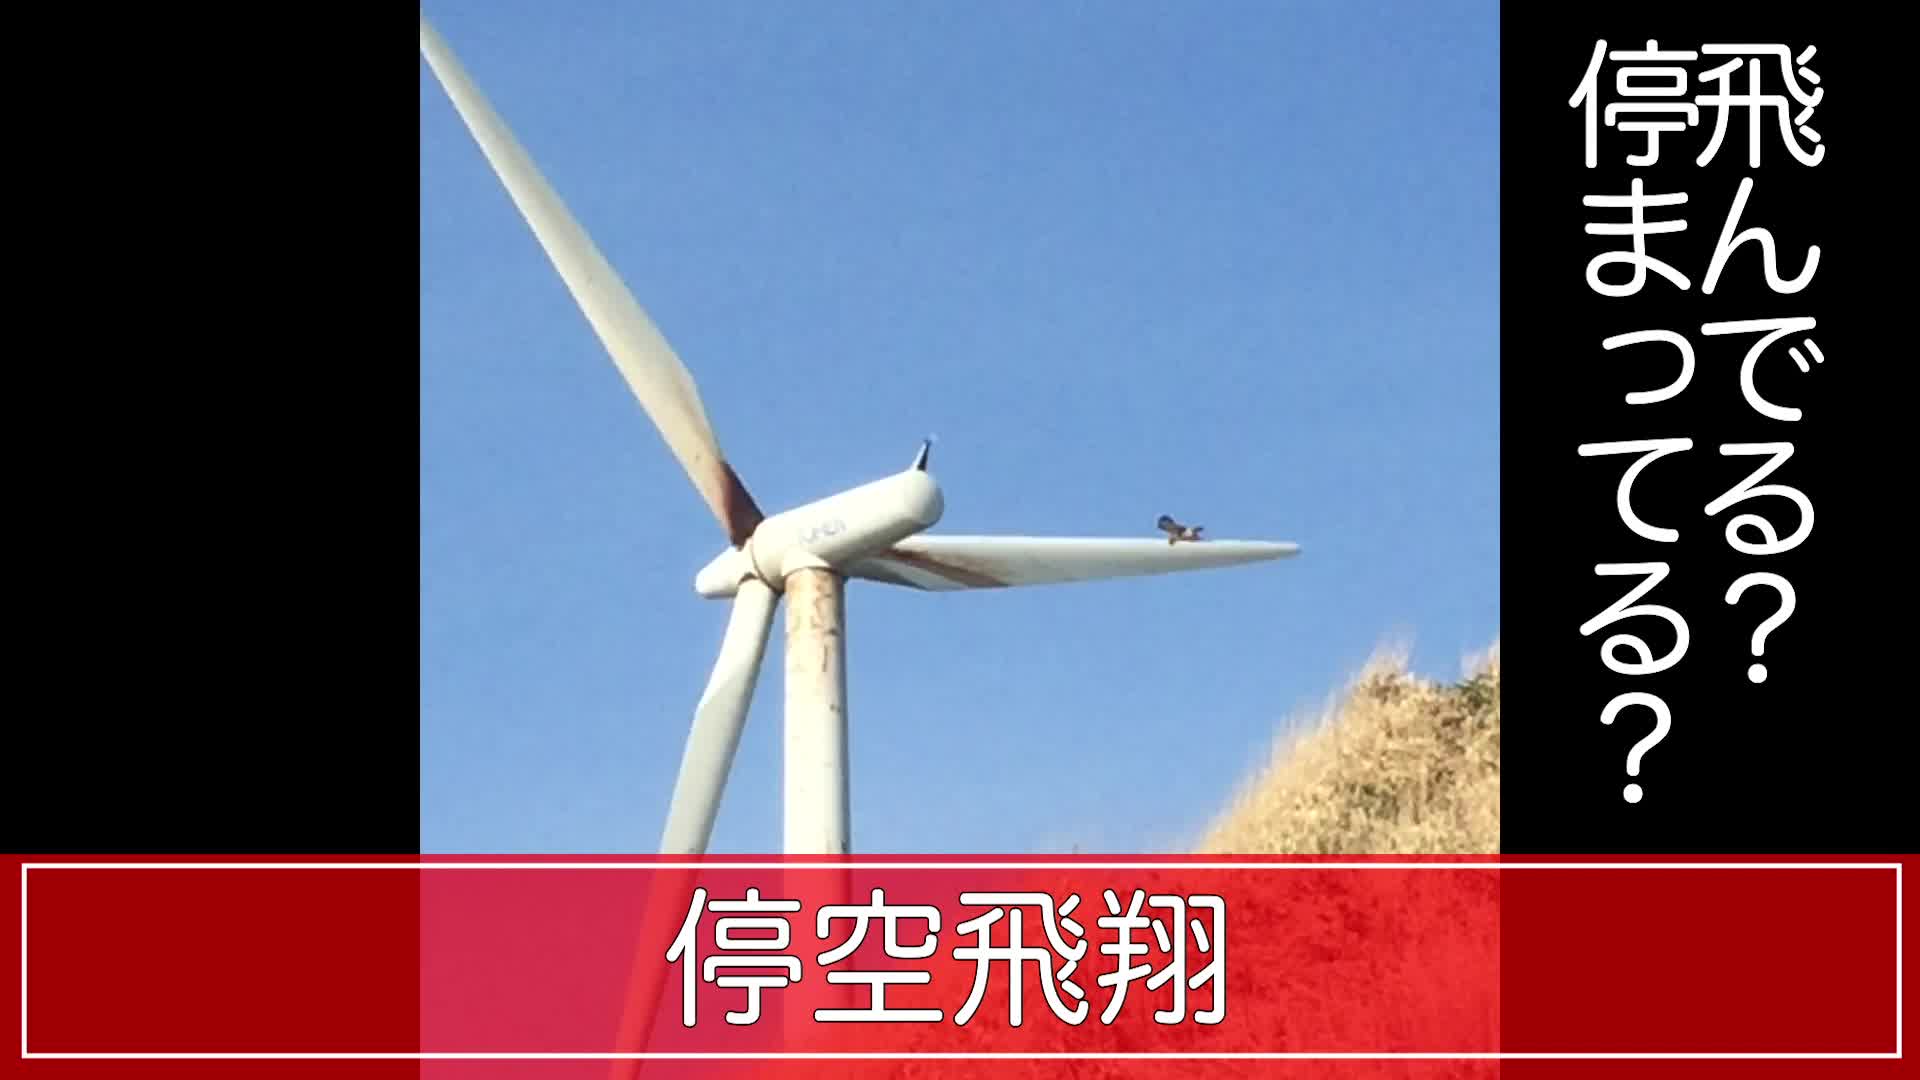 風力発電の風車と遊んでいるようにしか見えない鳥の停空飛翔 Videocash ビデオキャッシュ Yahoo Japan